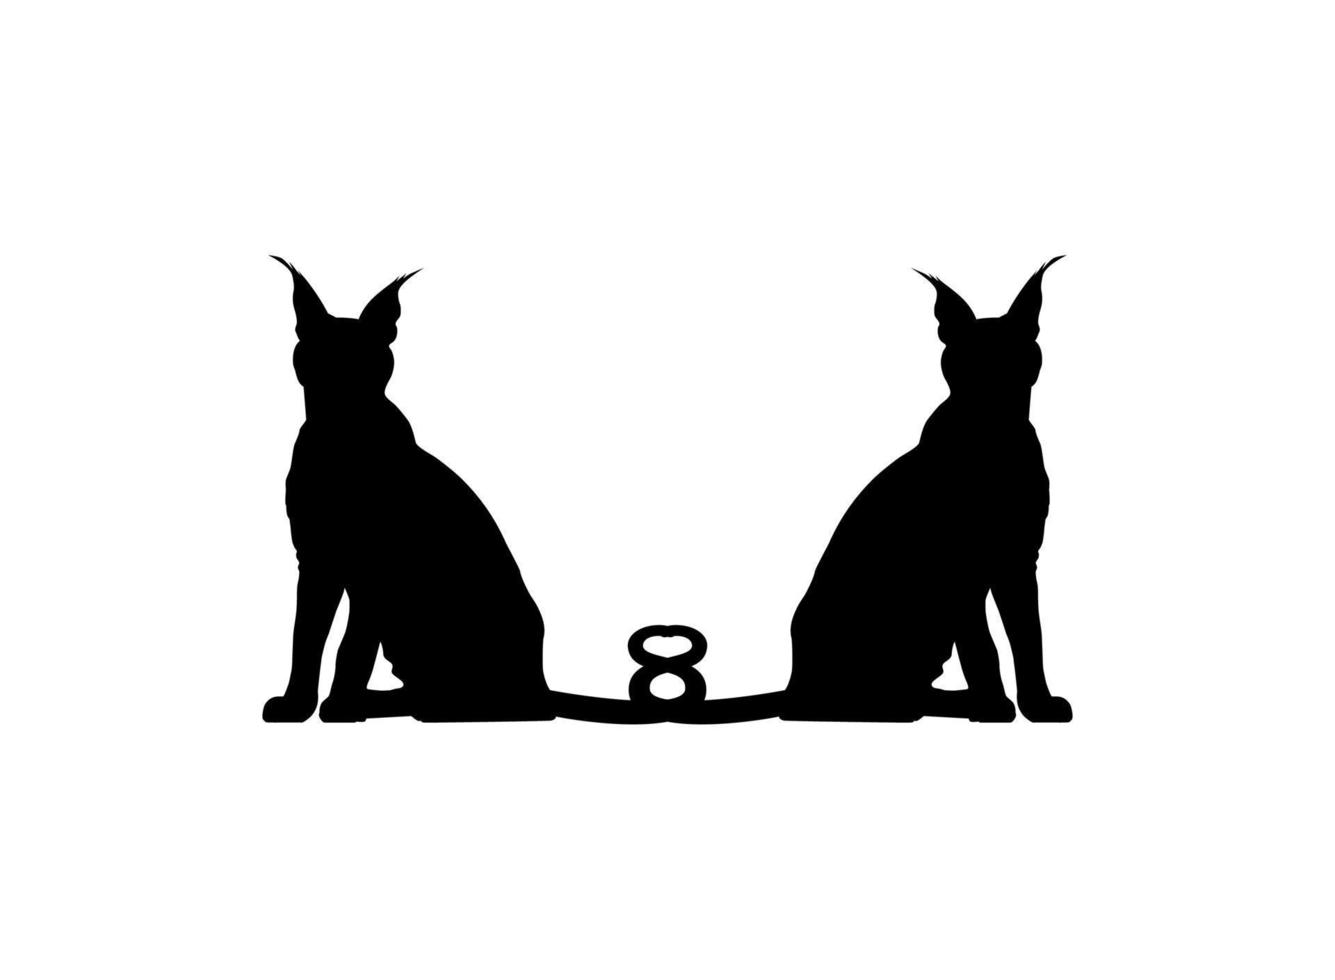 par da silhueta de gato caracal para ilustração de arte, logotipo, pictograma, site ou elemento de design gráfico. ilustração vetorial vetor